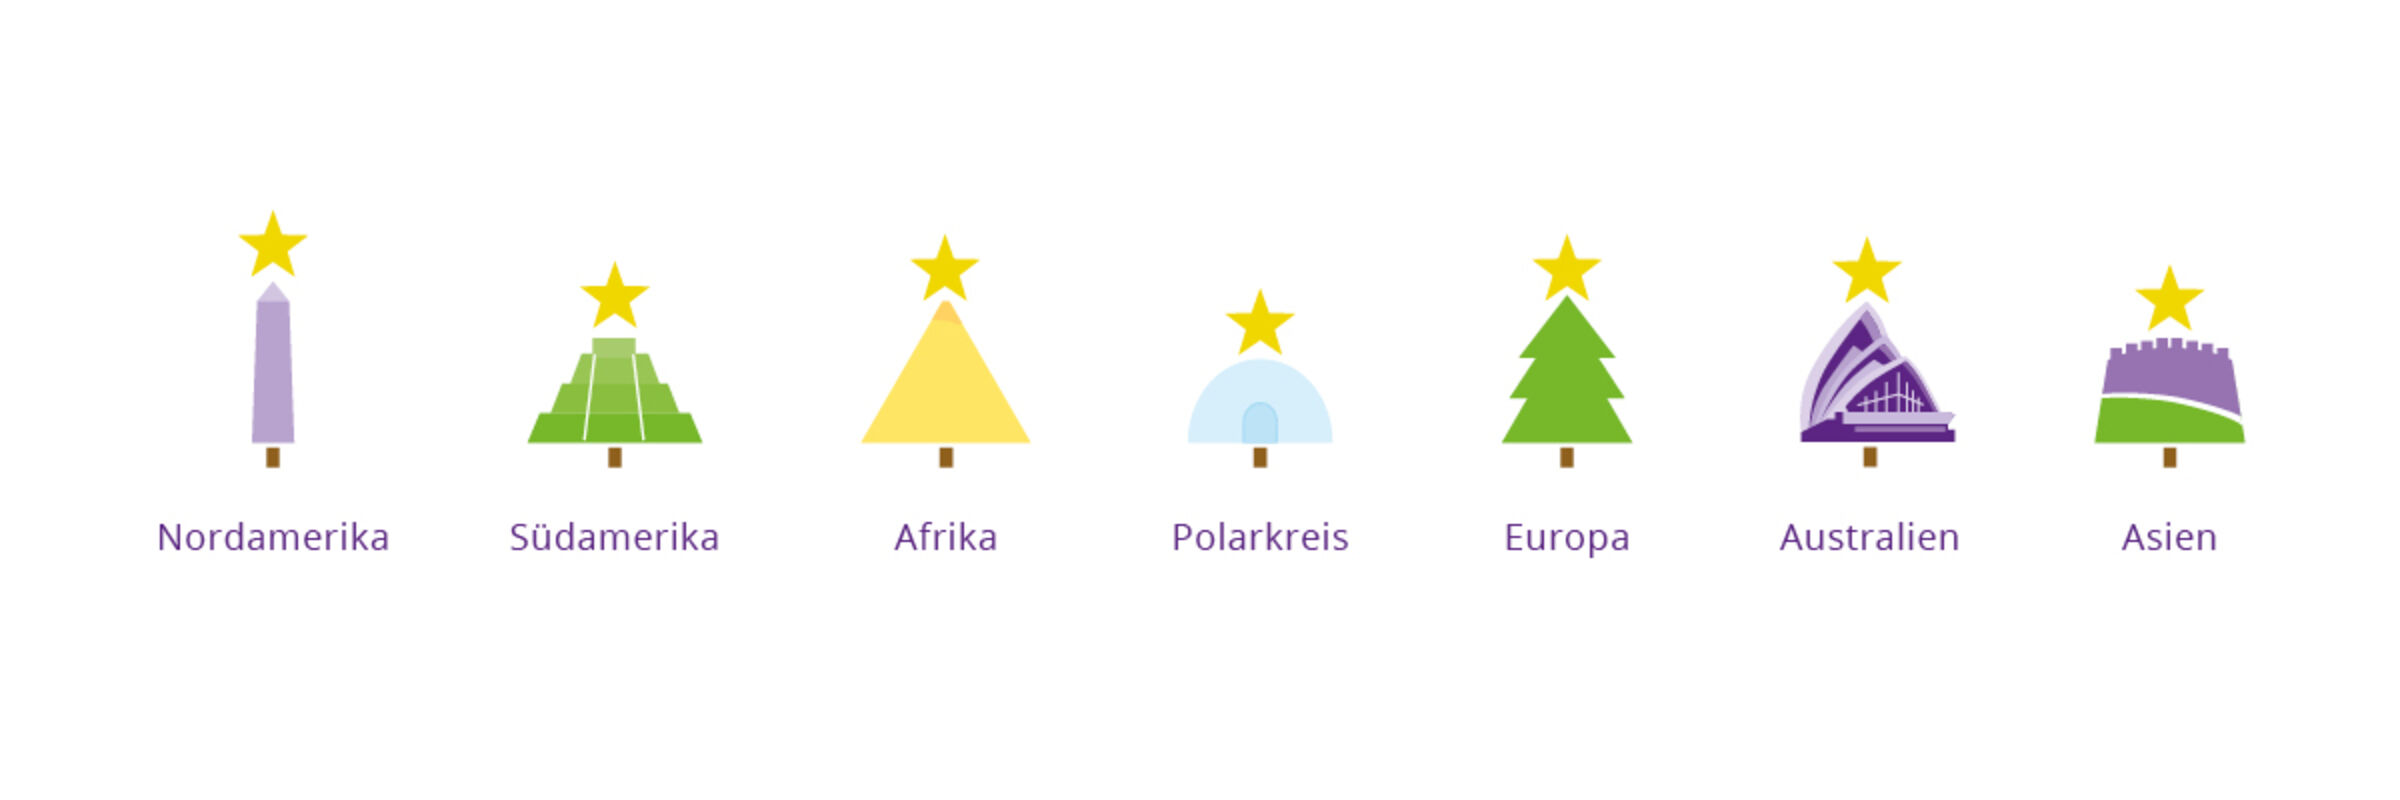 Eine Grafik mit einen symbolischen Weihnachtsbaum für alle Kontinente der Welt. 